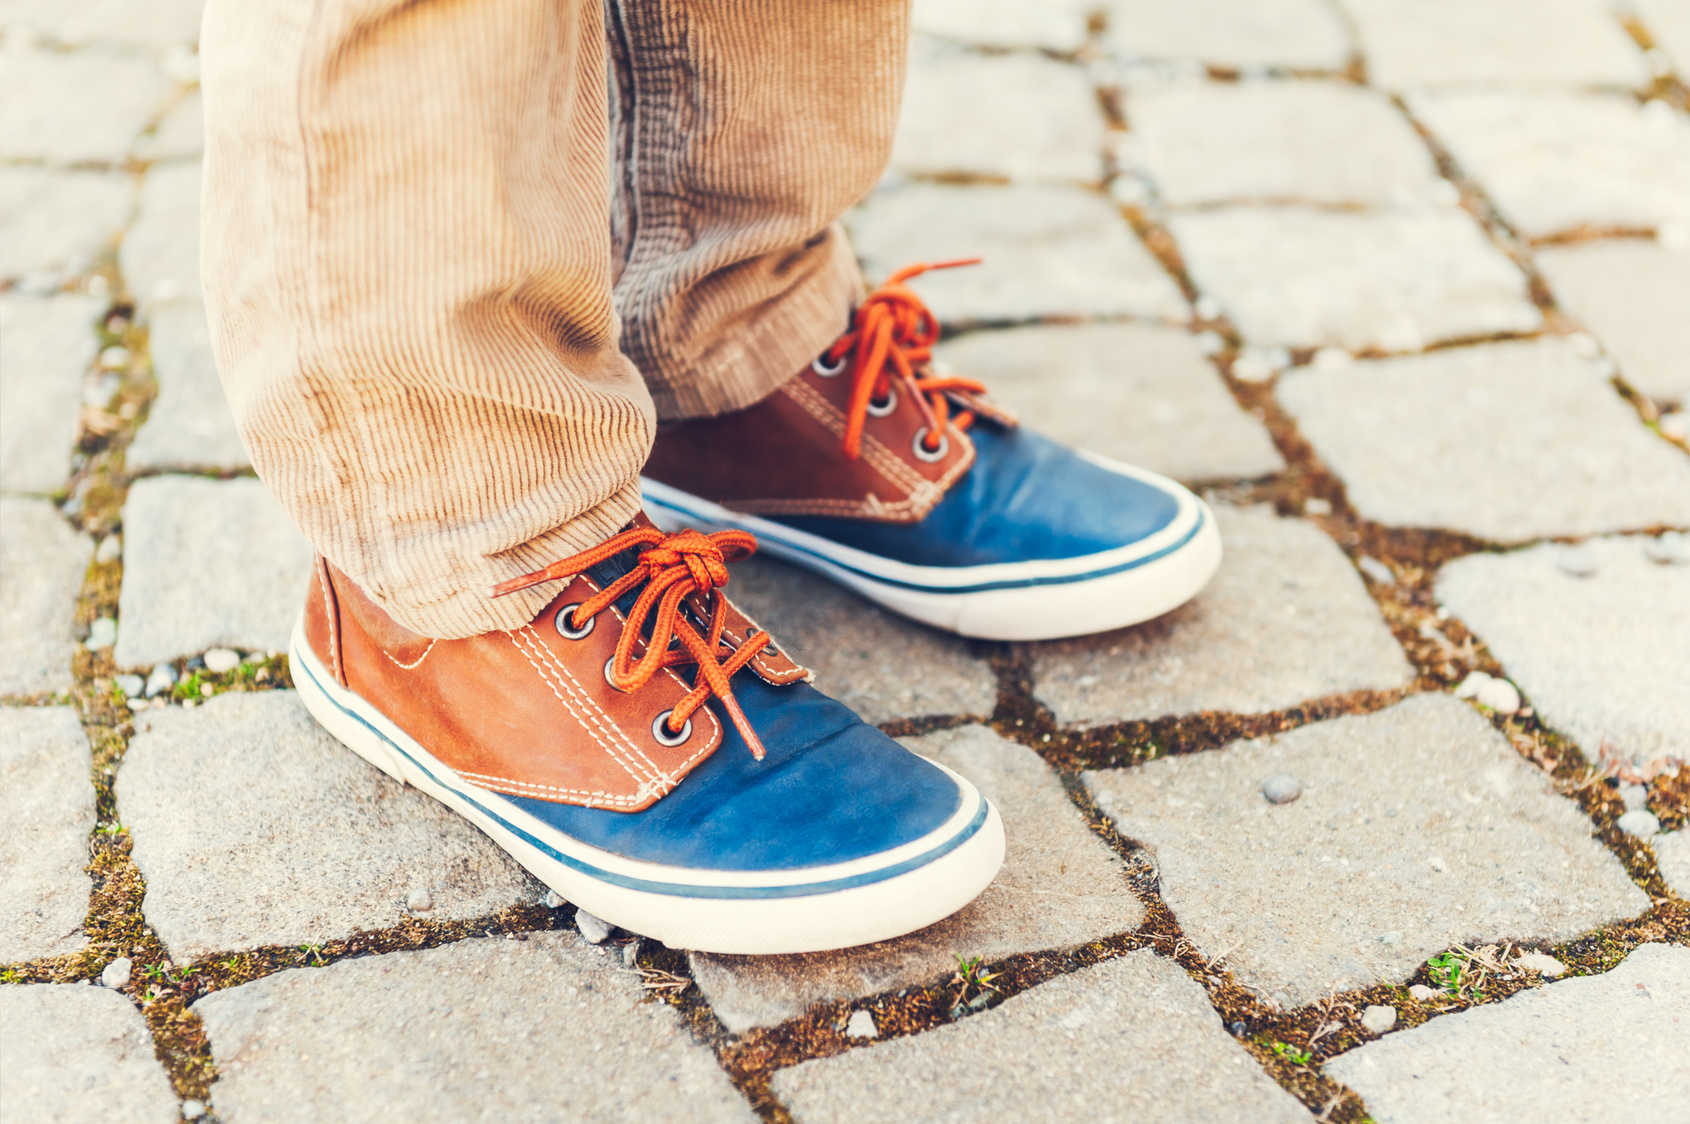 Schuhe imprägnieren: So schützen Sie Schuhe vor Feuchtigkeit